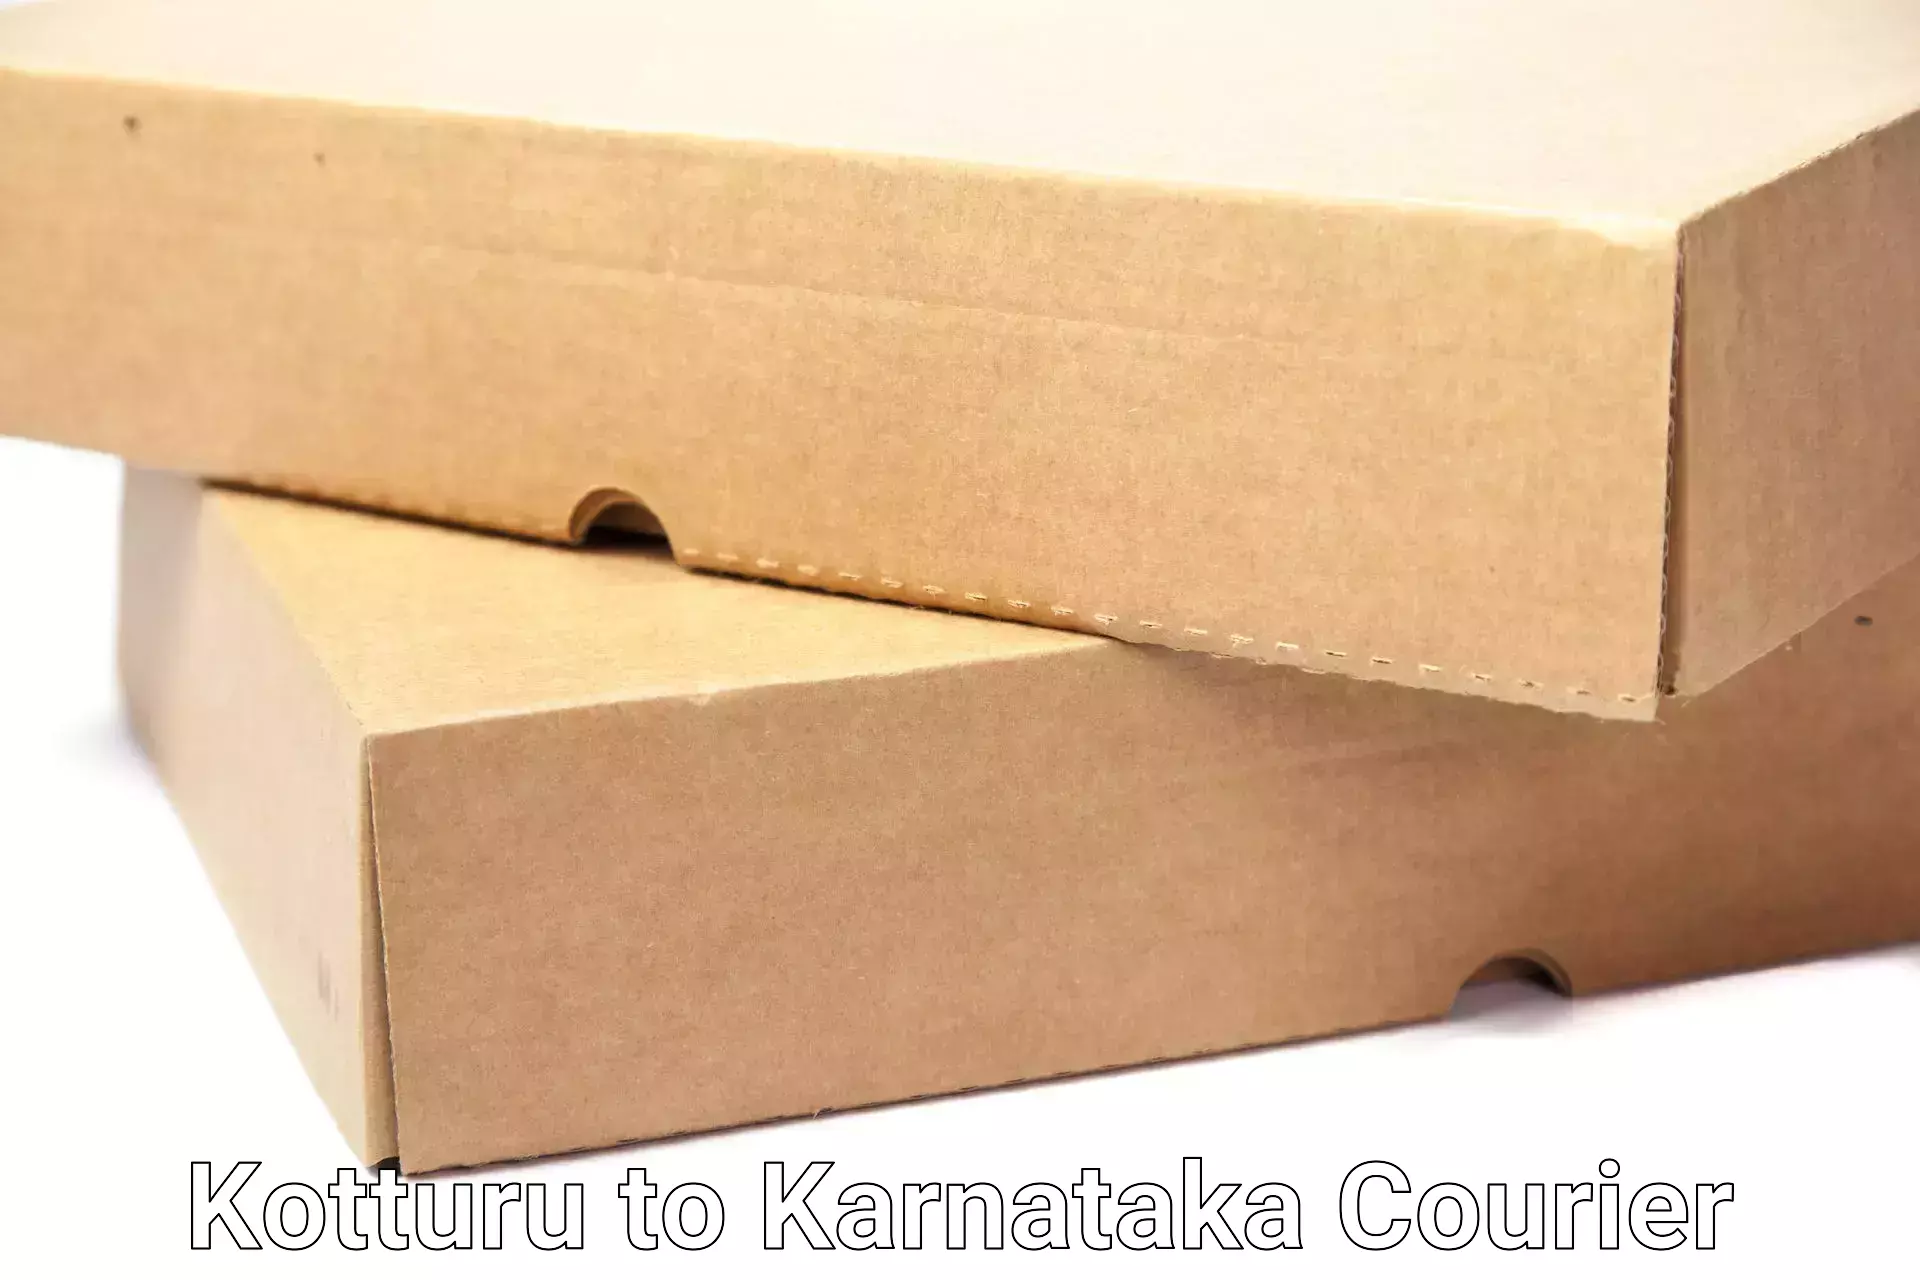 Furniture moving service Kotturu to Karnataka